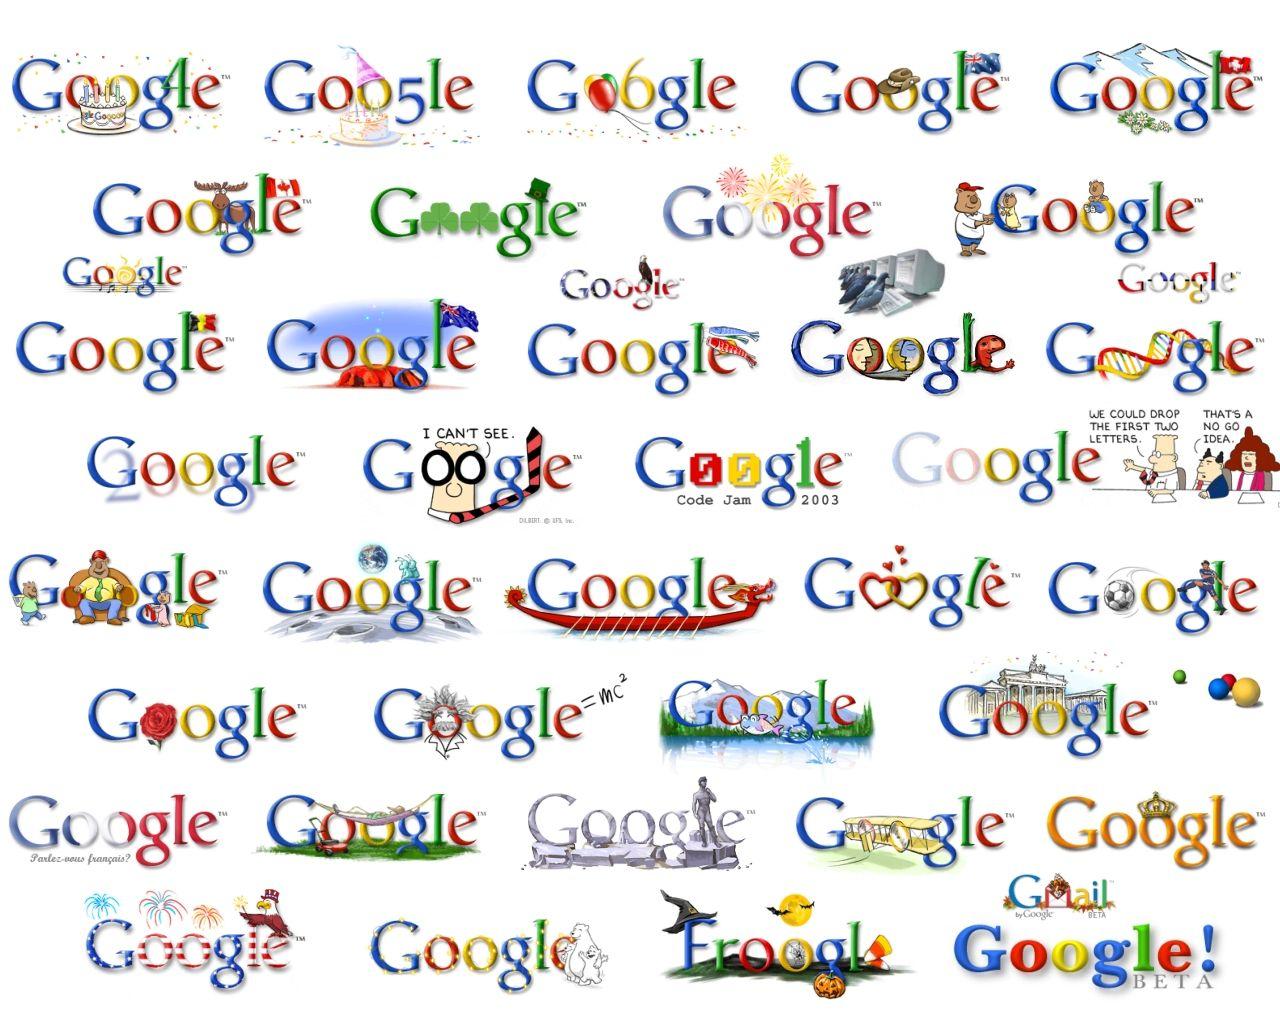 Every Google Logo - gle.ovo.kom.uni.st » Google Stats